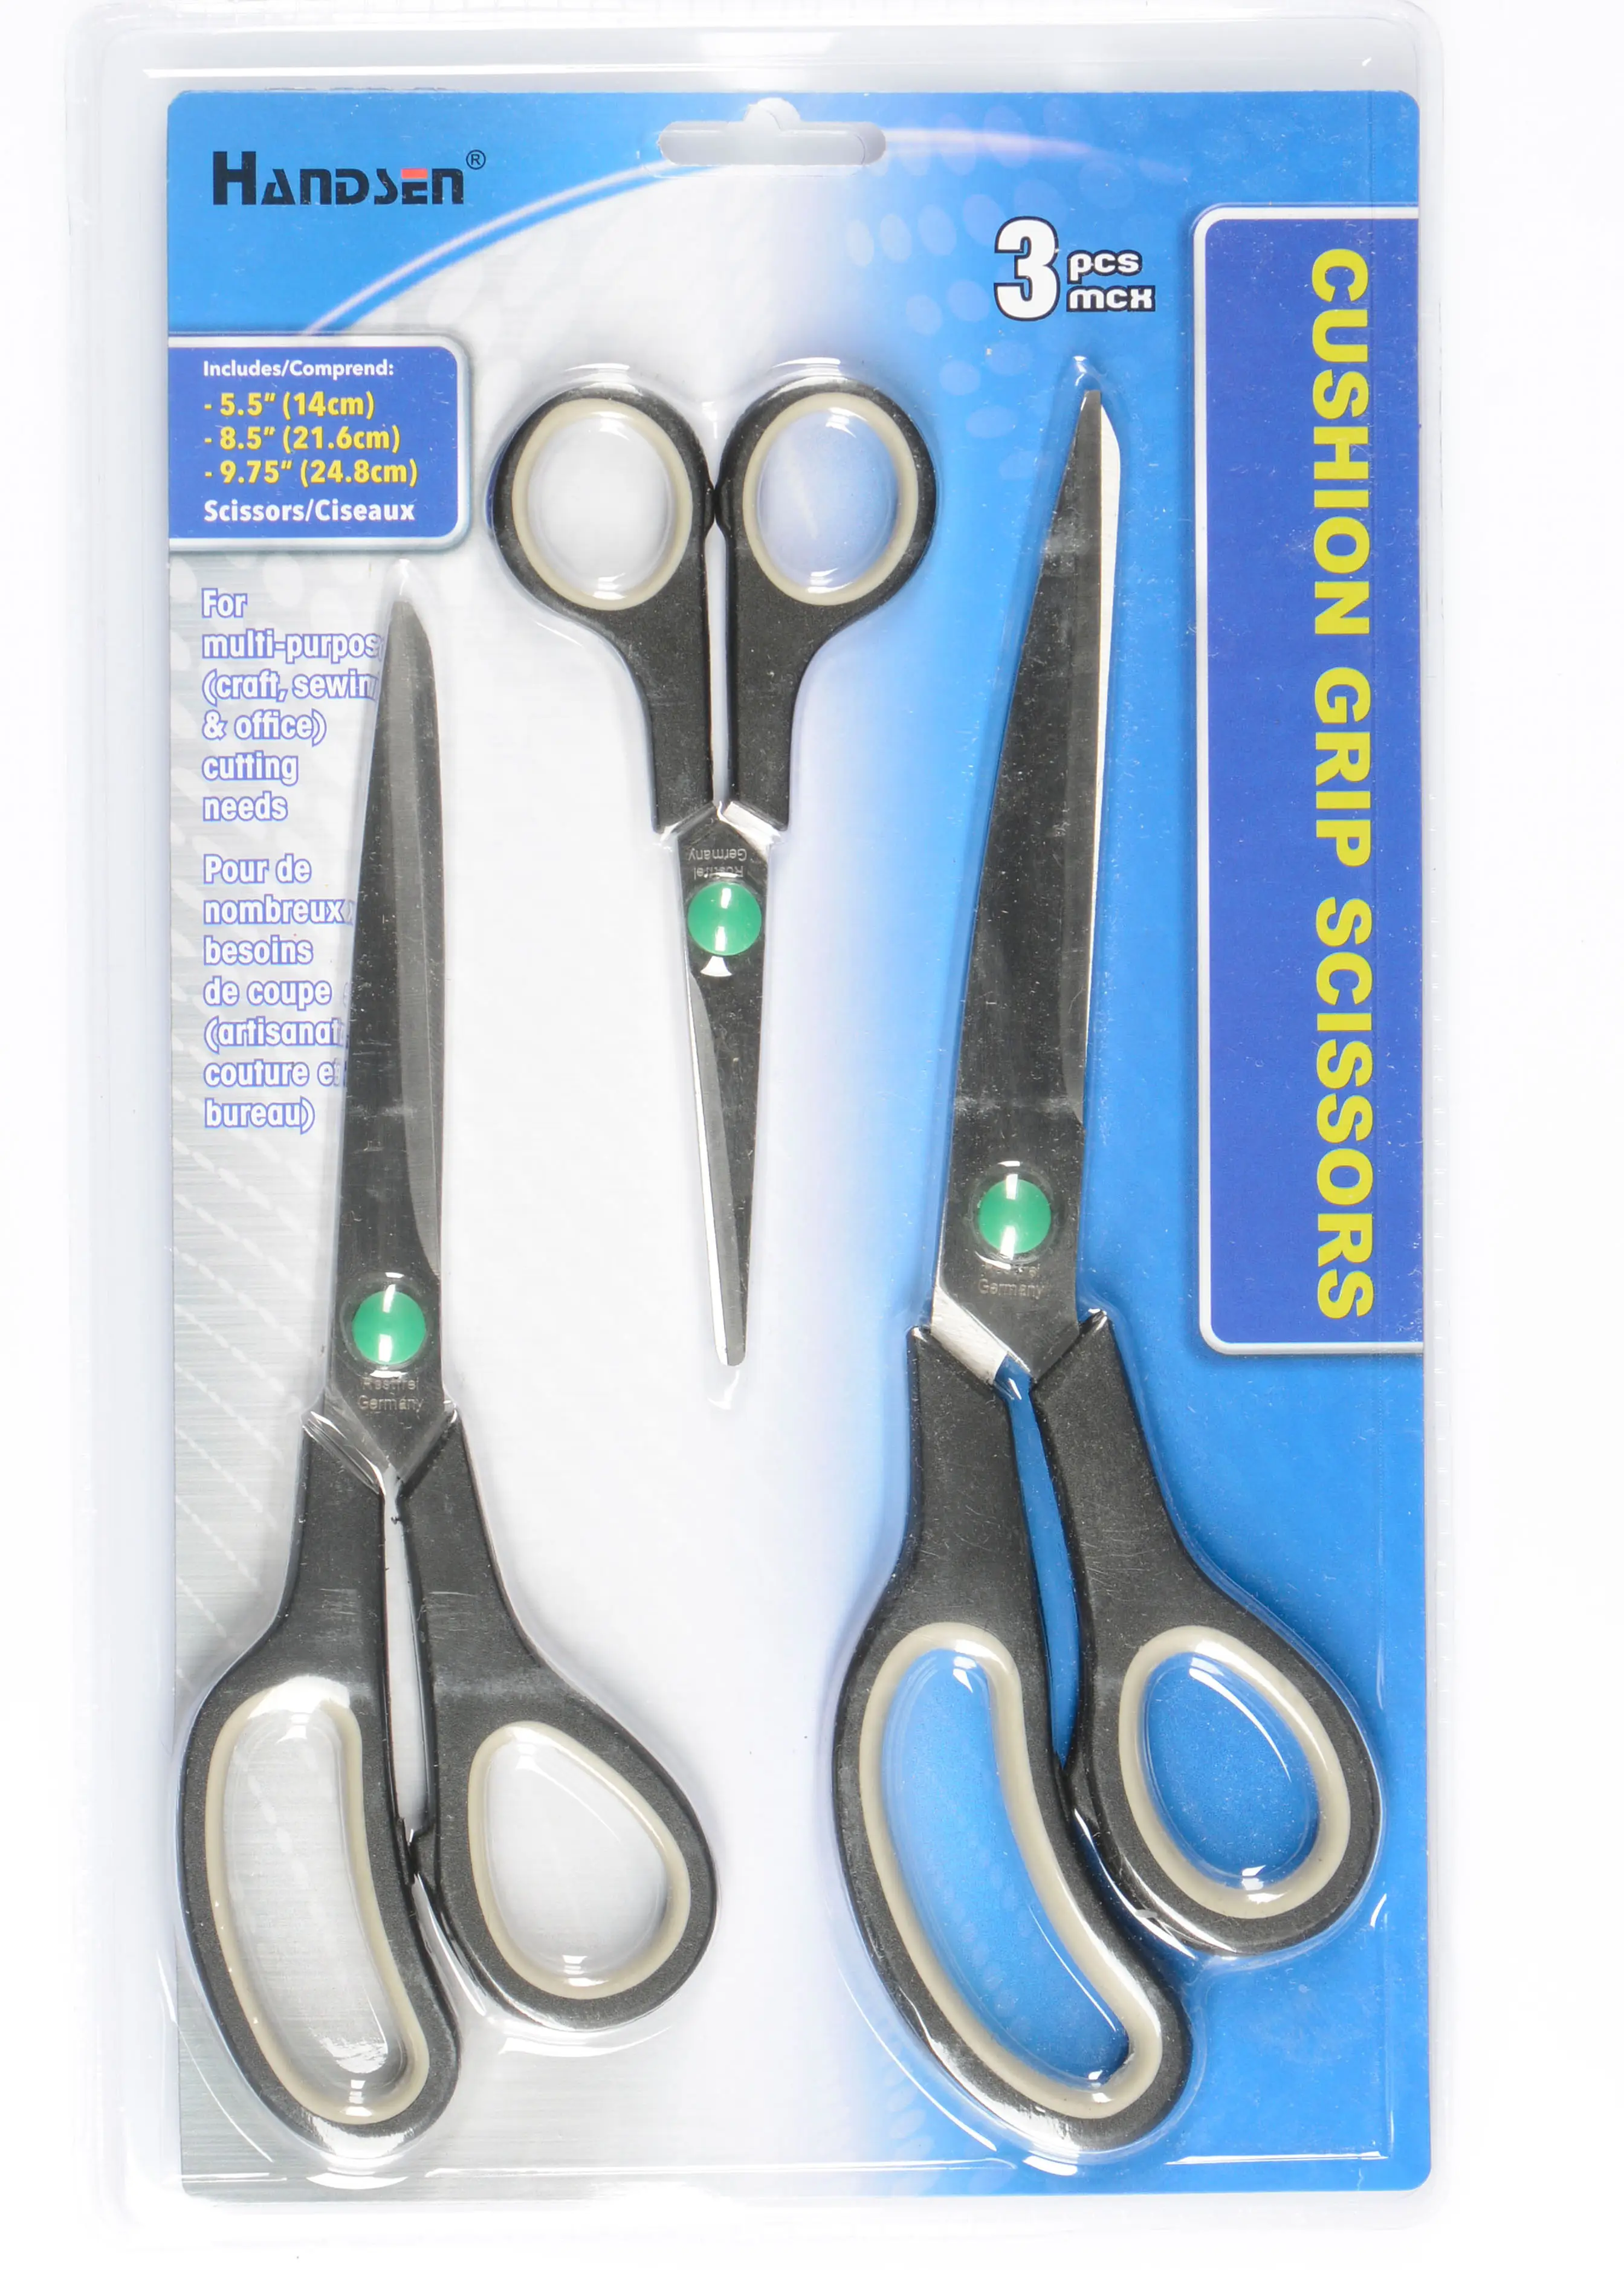 Excellent 3-piece household scissors set